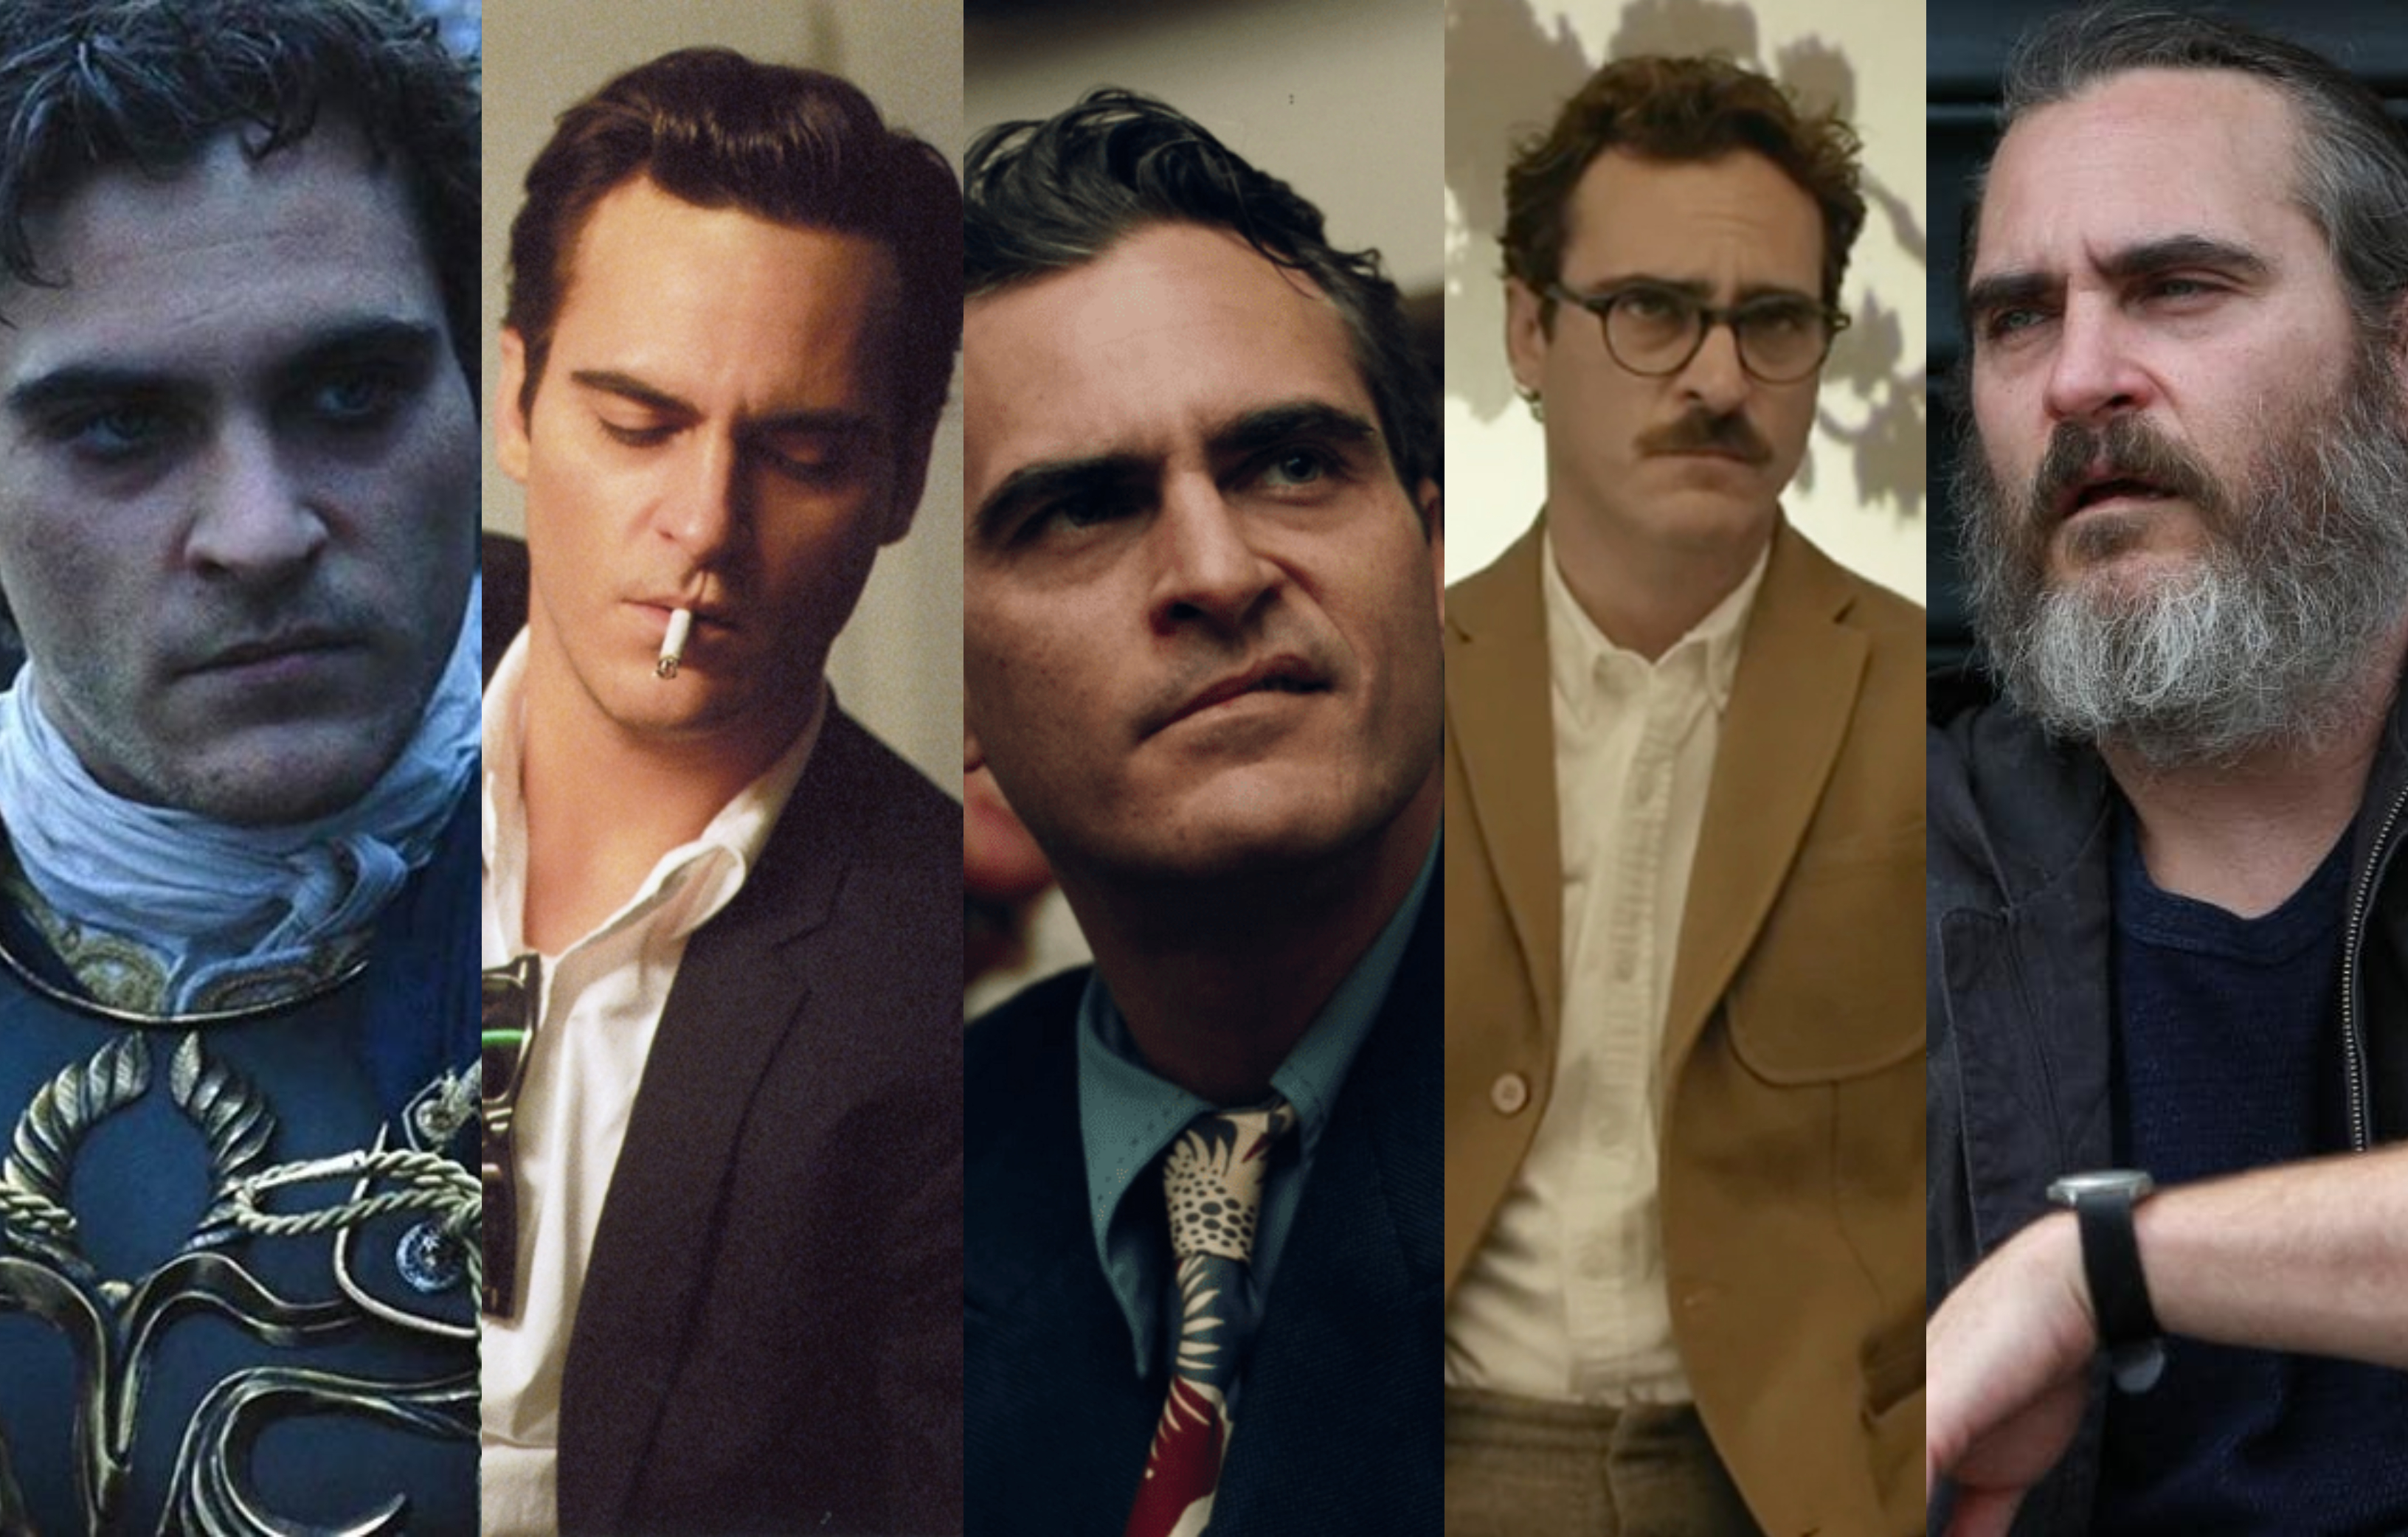 Las 5 actuaciones por las que Joaquin Phoenix ya se merecía el Oscar antes del ...3264 x 2084